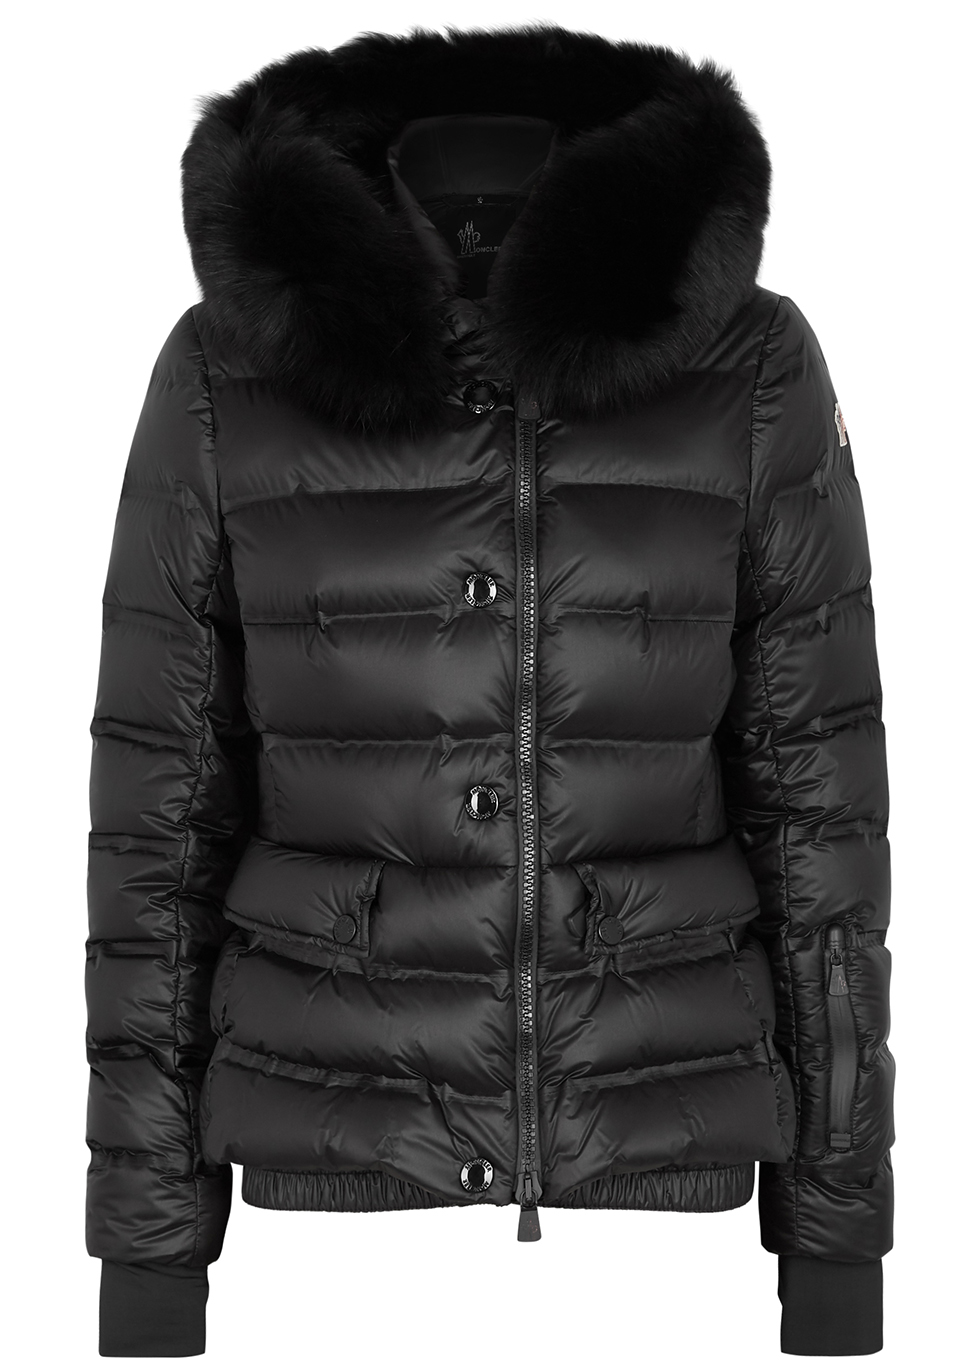 Moncler Grenoble black fur-trimmed shell jacket - Harvey Nichols